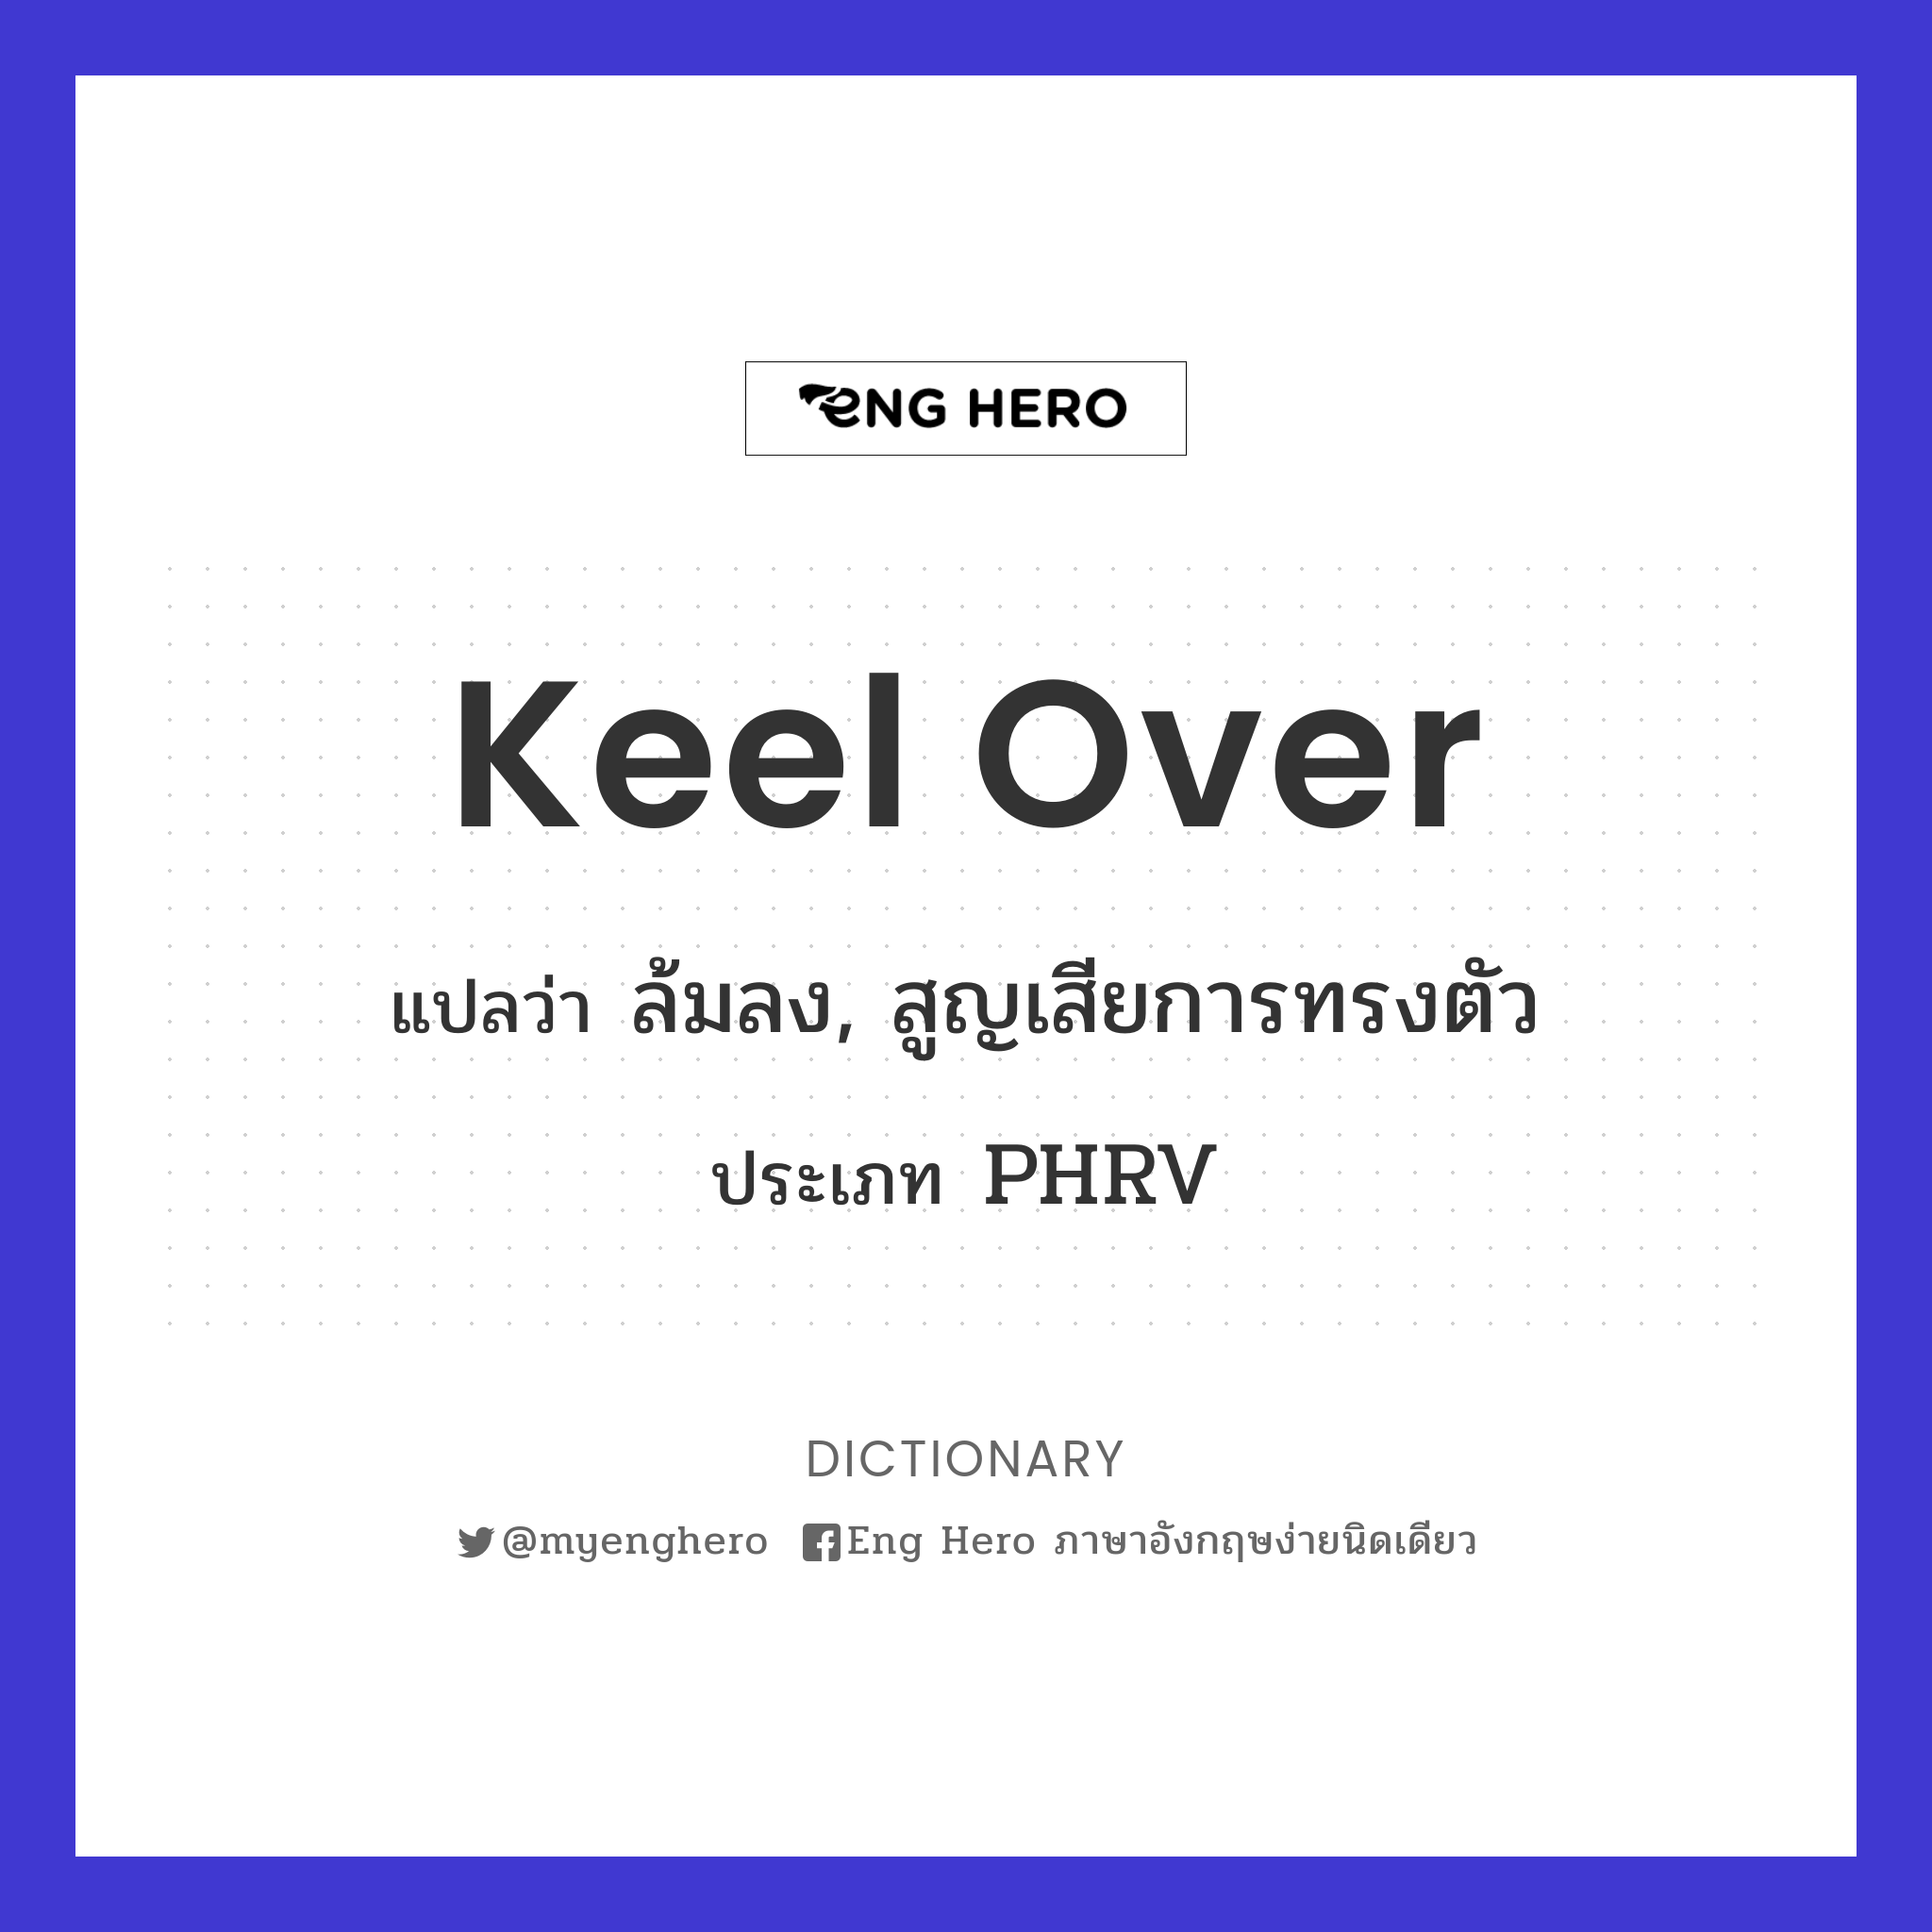 Keel Over แปลว่า ล้มลง, สูญเสียการทรงตัว | Eng Hero เรียนภาษาอังกฤษ ออนไลน์  ฟรี